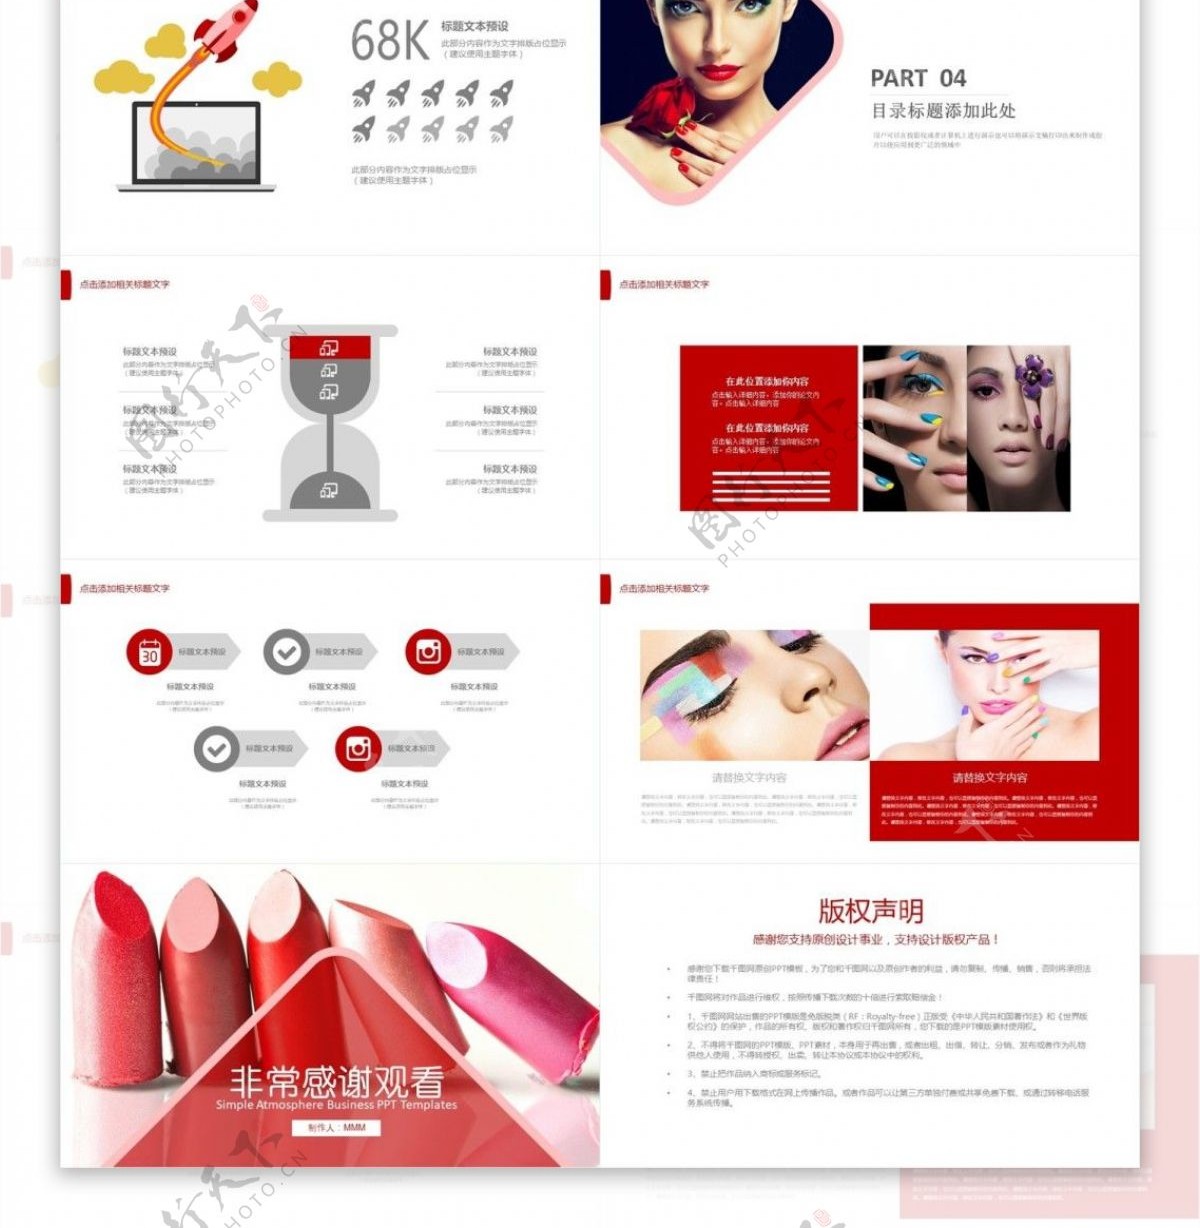 美容美女彩妆口红产品宣传介绍PPT模板